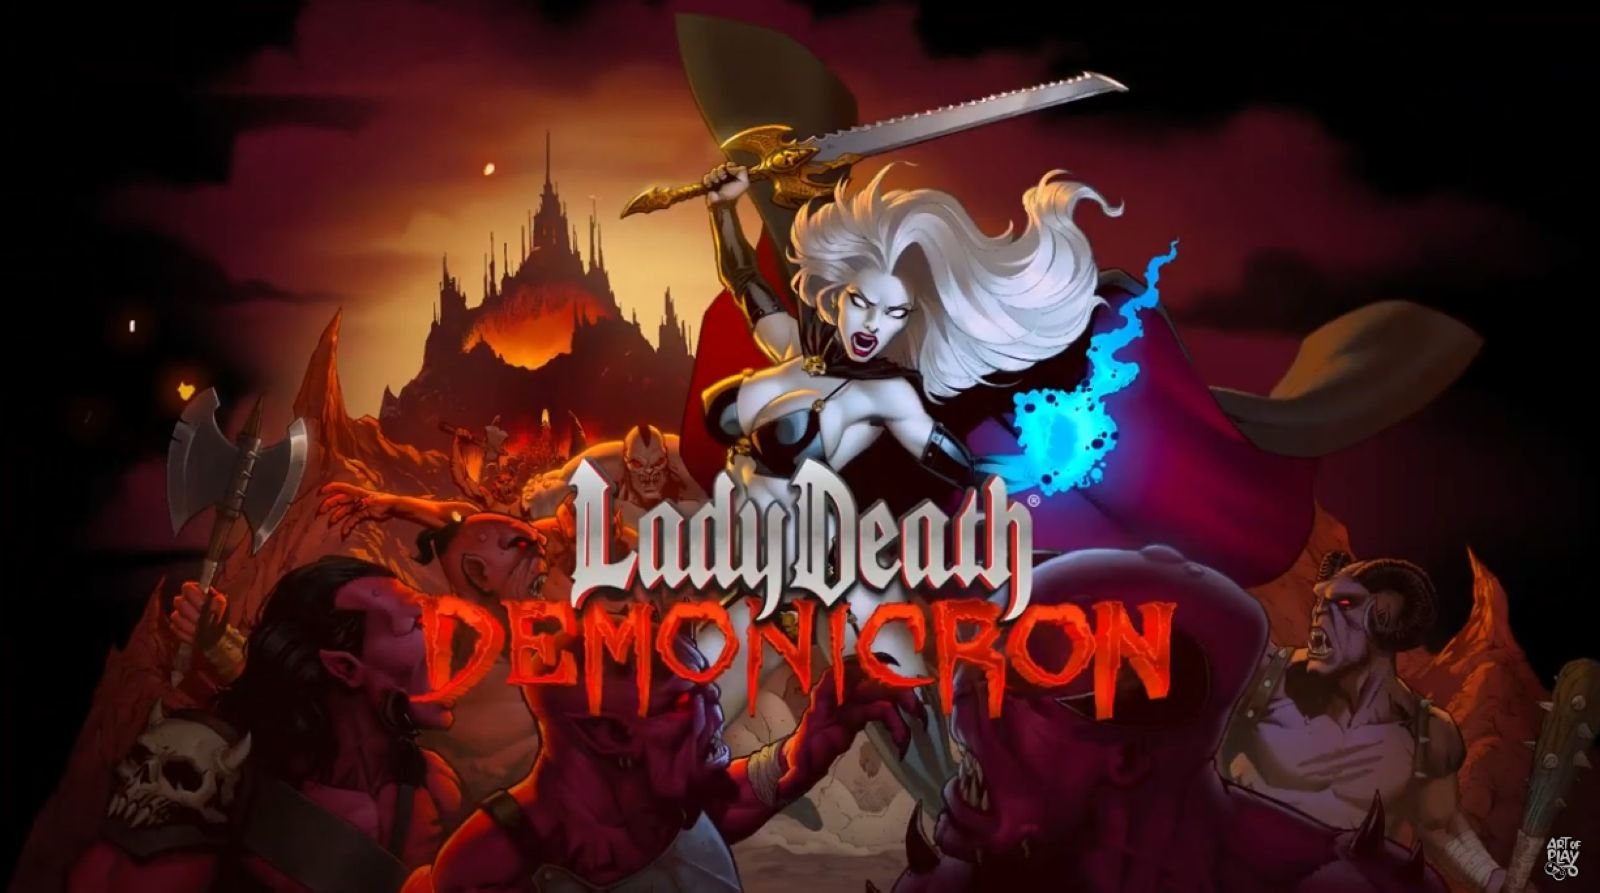 Lady Death Demonicron : le personnage de fiction voit son adaptation en jeu vidéo sur Kickstarter